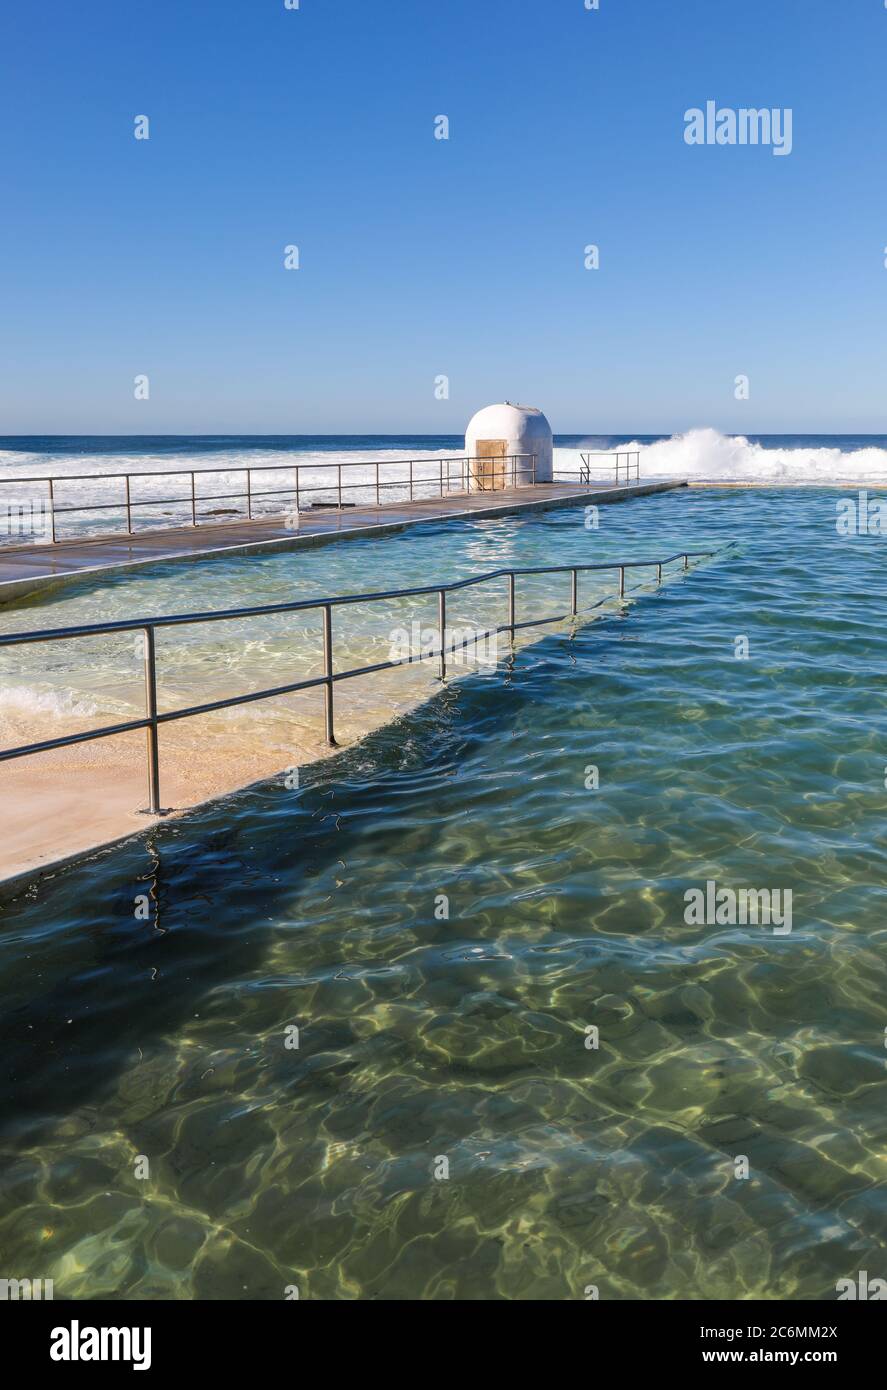 Bagni di Merewether a Newcastle NSW Australia è una delle più grandi piscine di acqua salata in Australia. Gli aggiornamenti recenti includono una rampa di accesso per una maggiore facilità Foto Stock